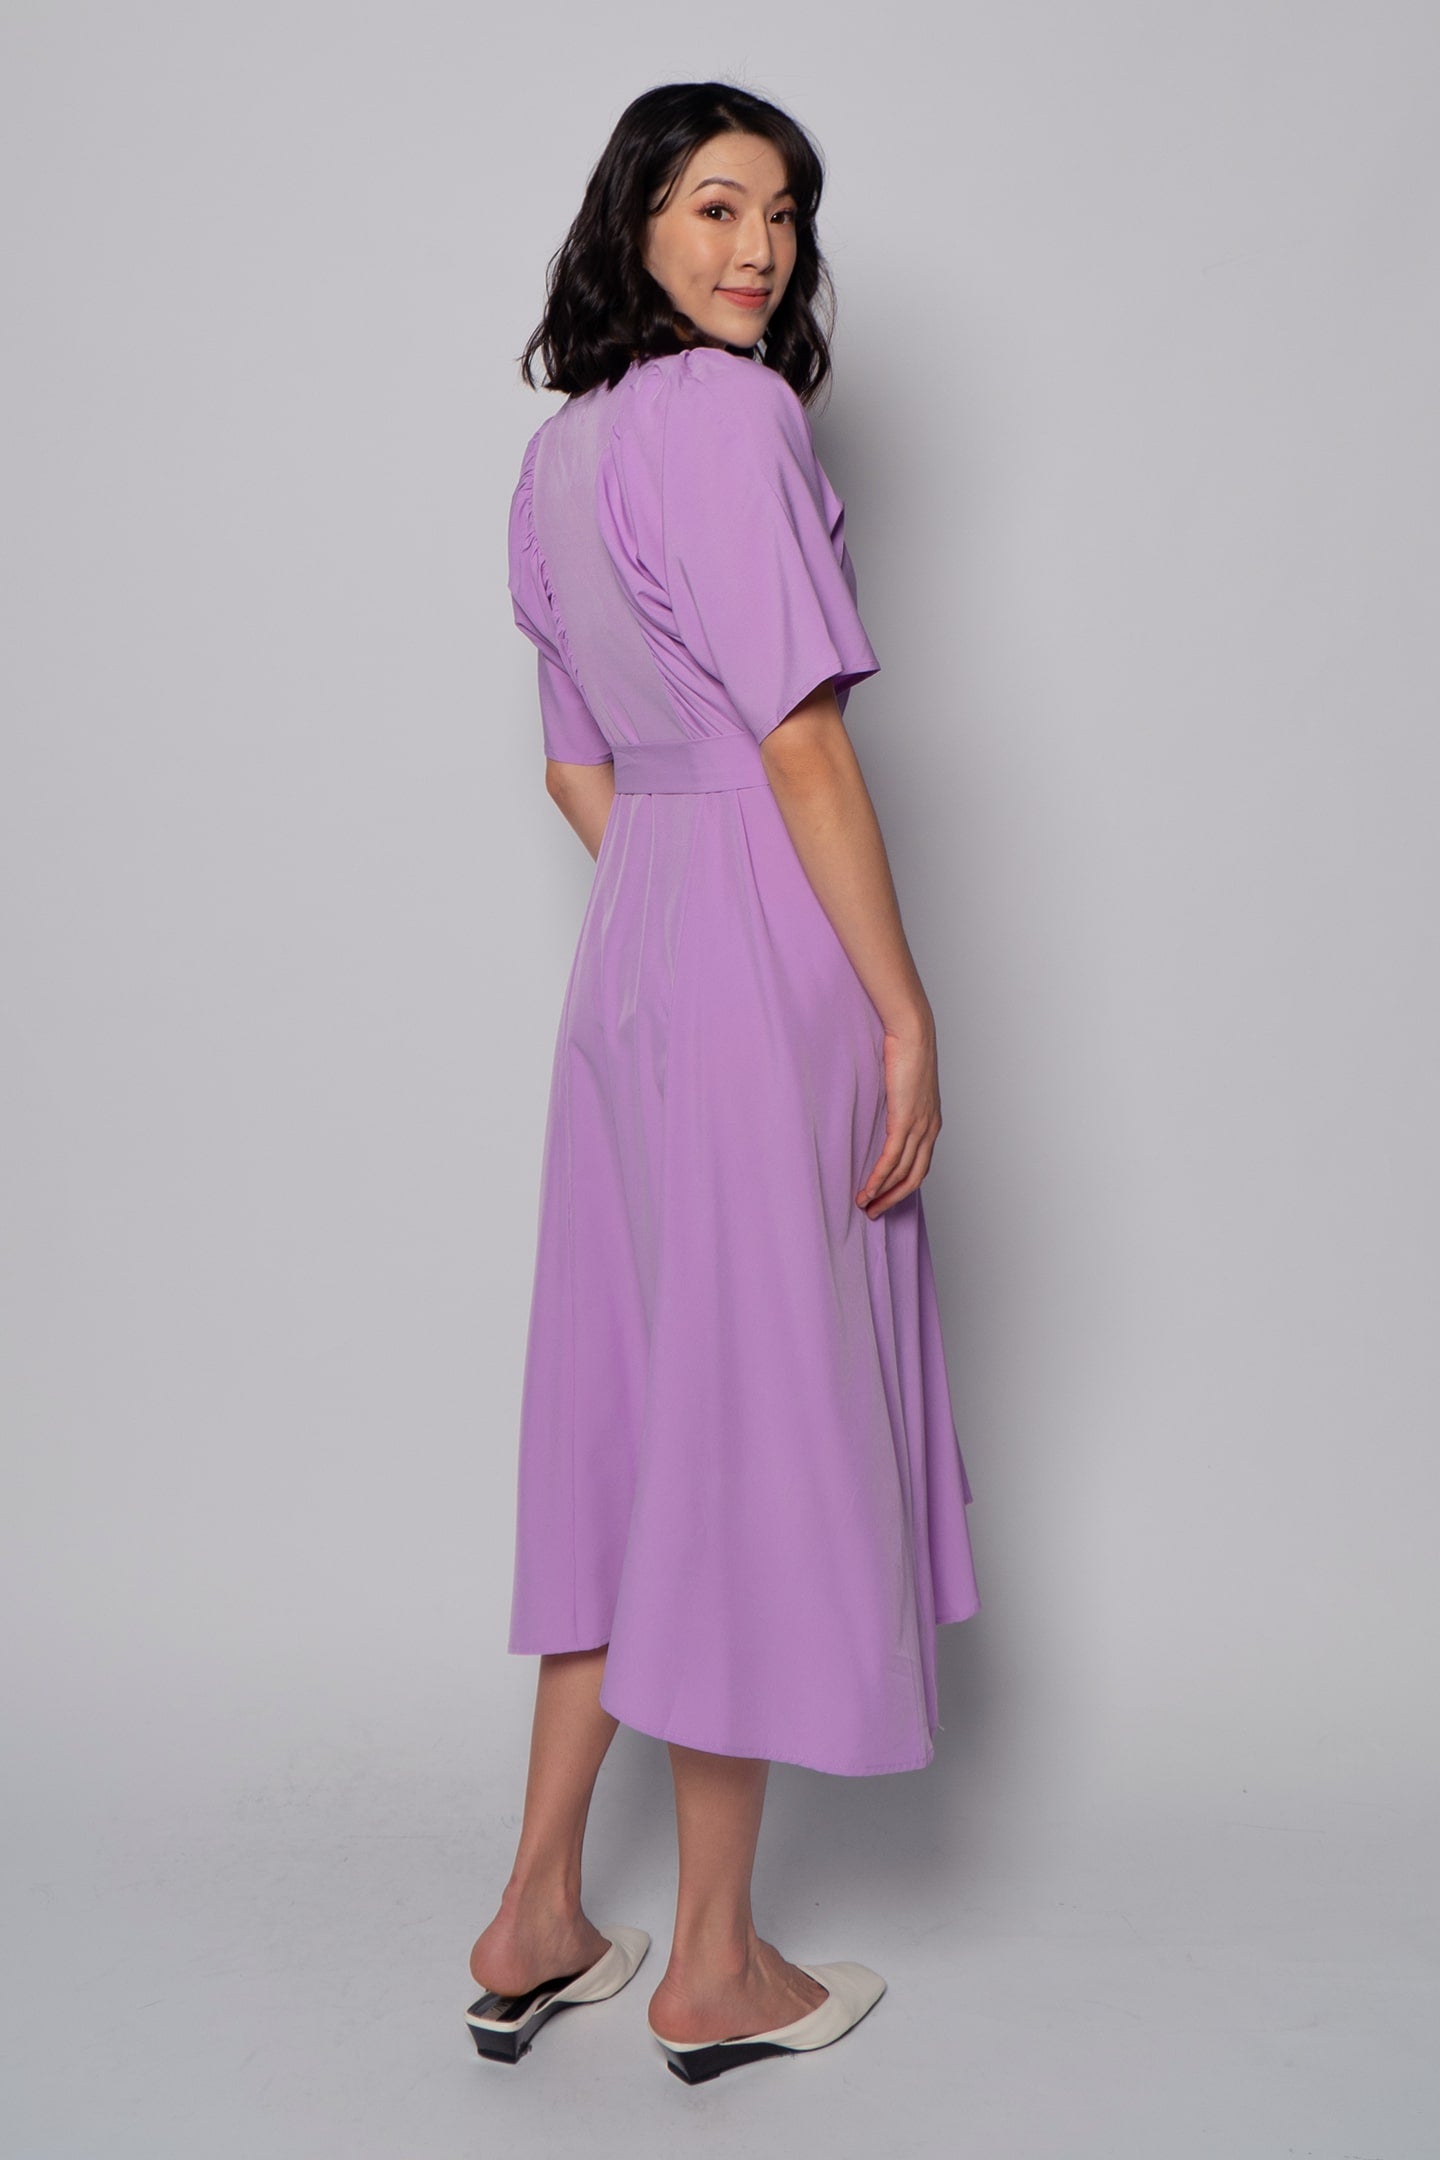 Whitney V Dress in Plain Lavender